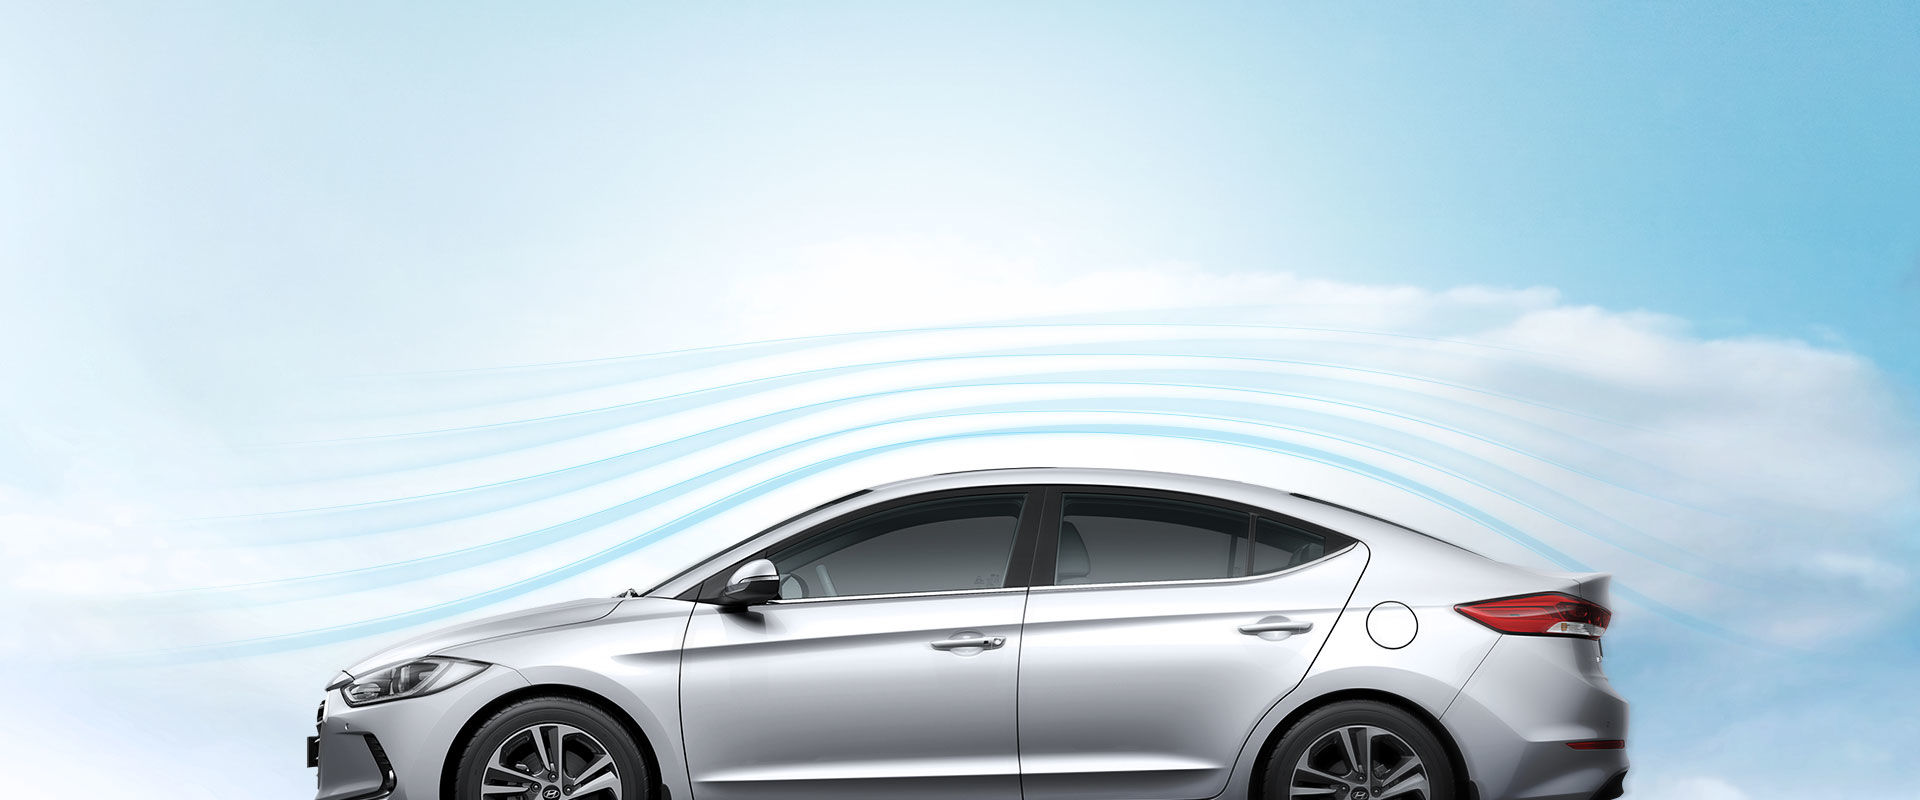 رسم تصويري ديناميكي هوائي حول الجزء الخارجي لسيارة إلنترا فضية اللون